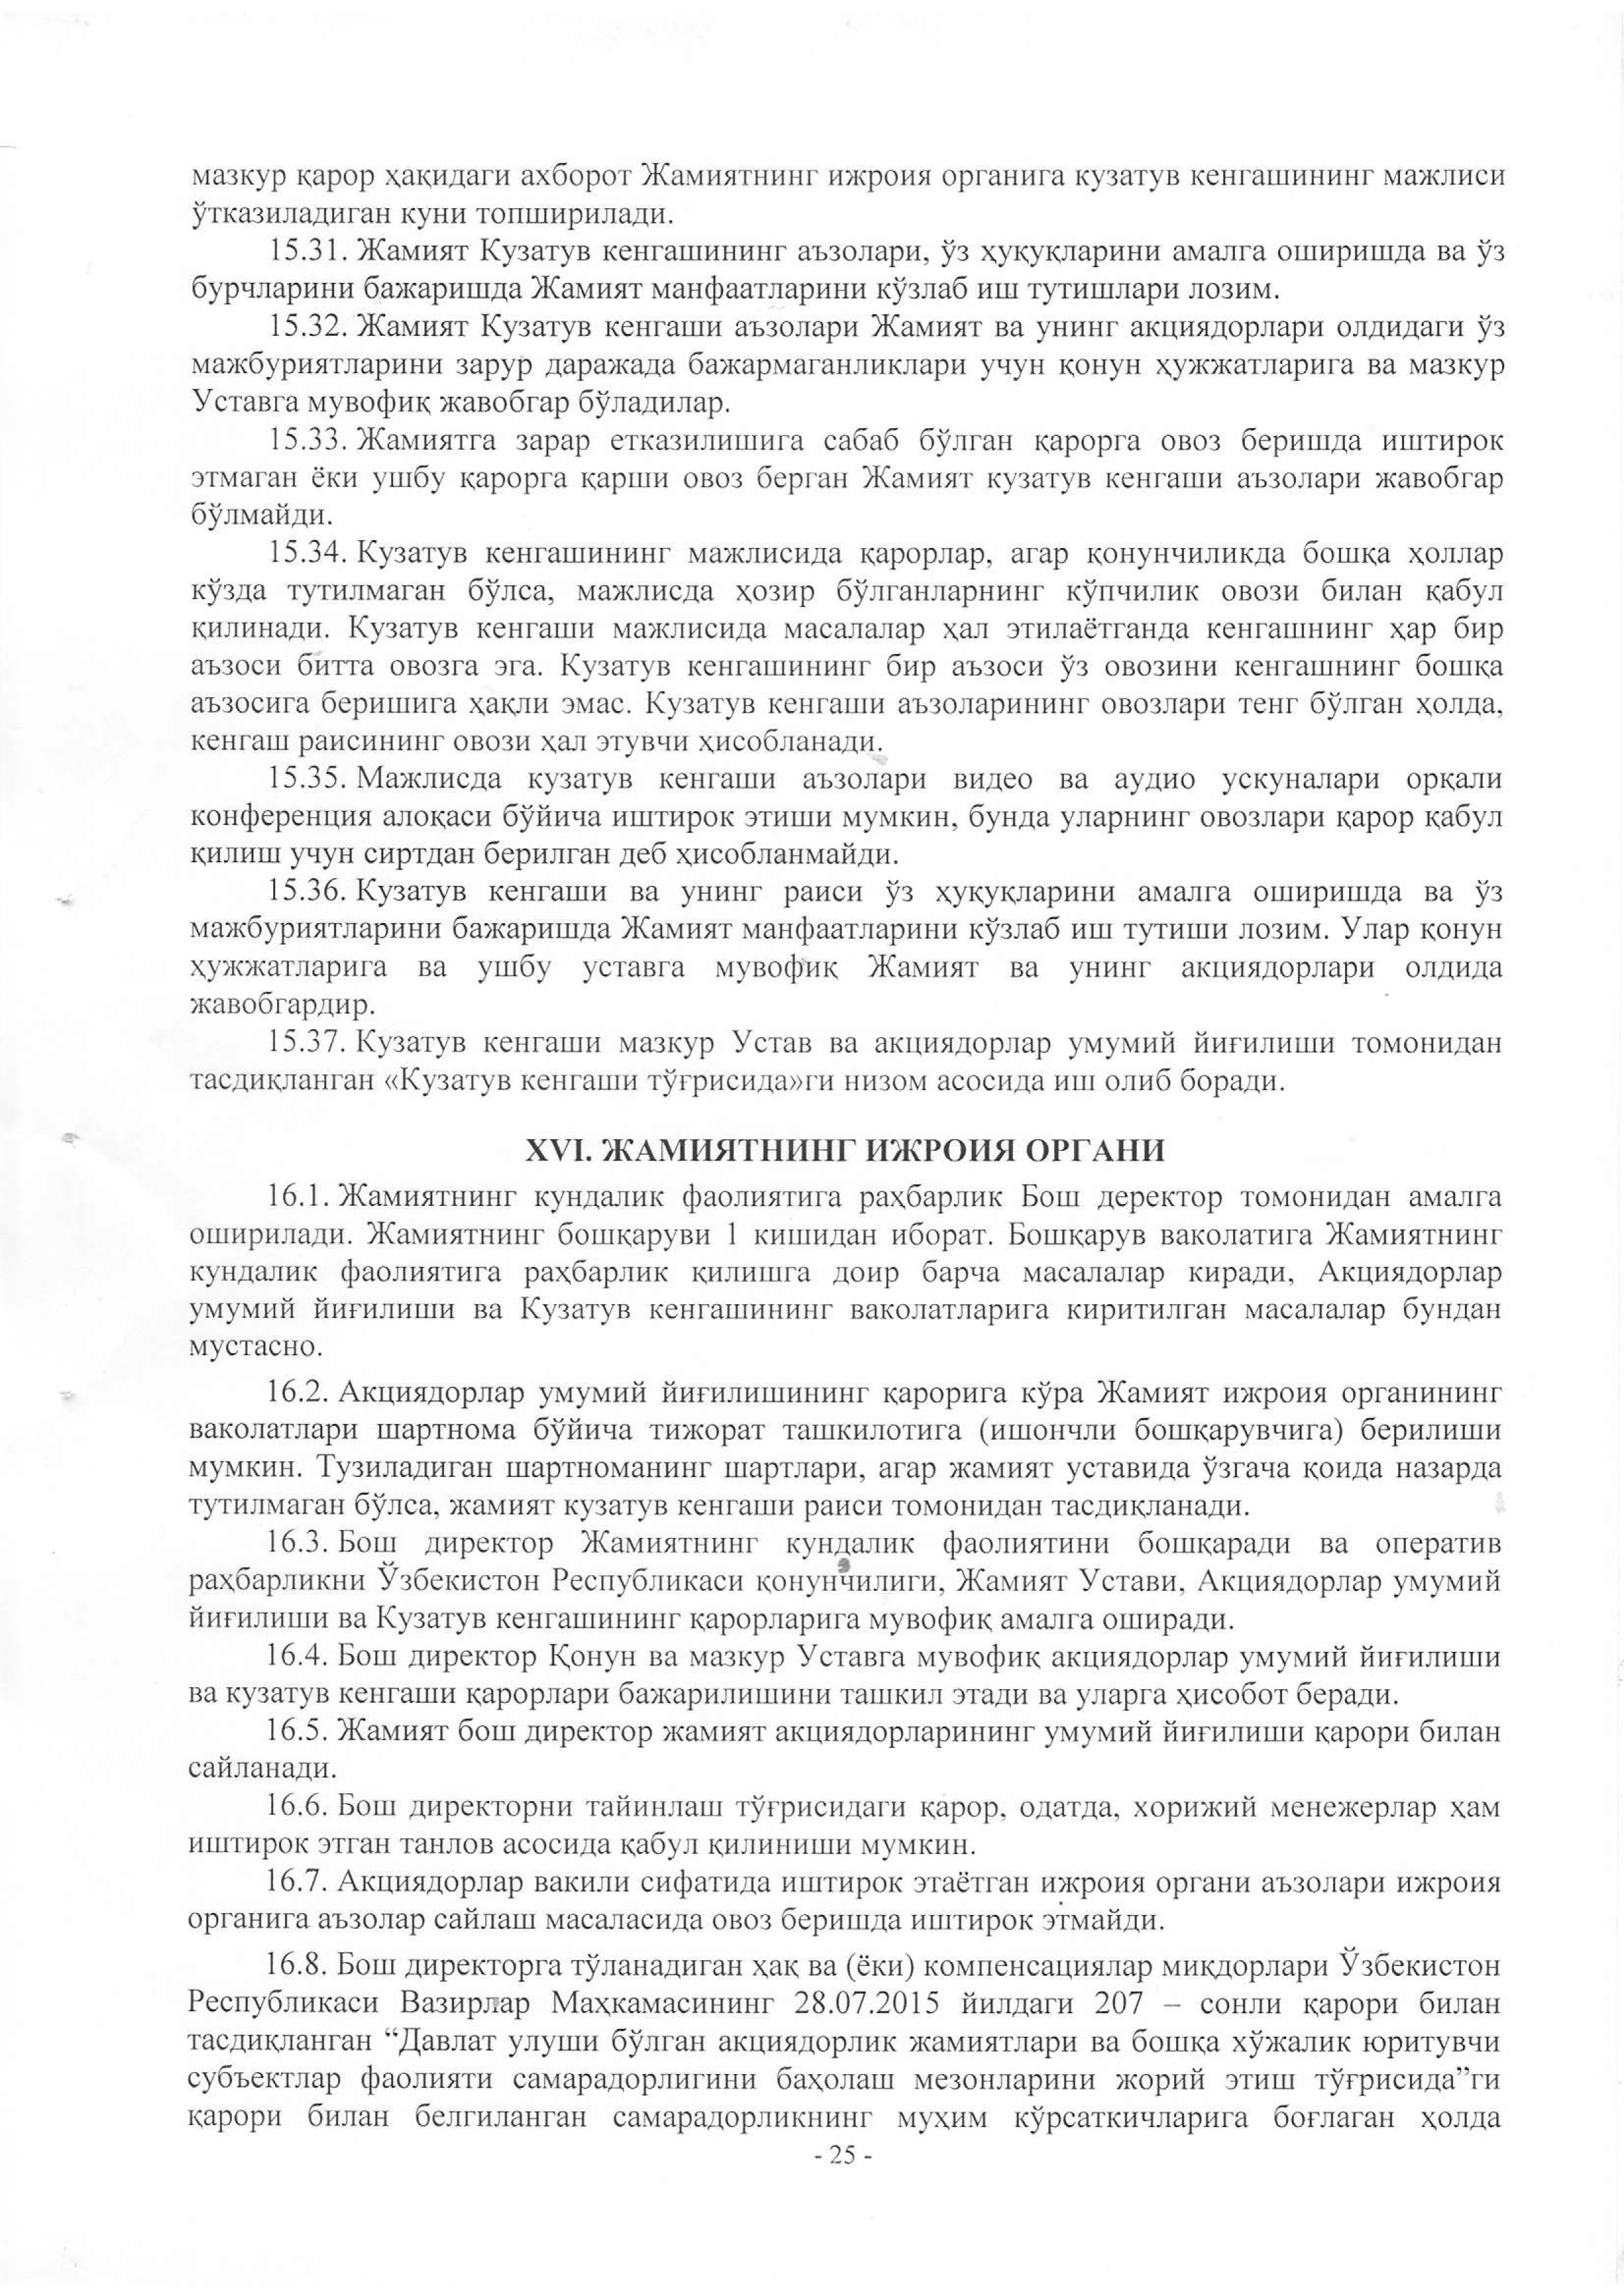 устав 2019 жахон бозори-25